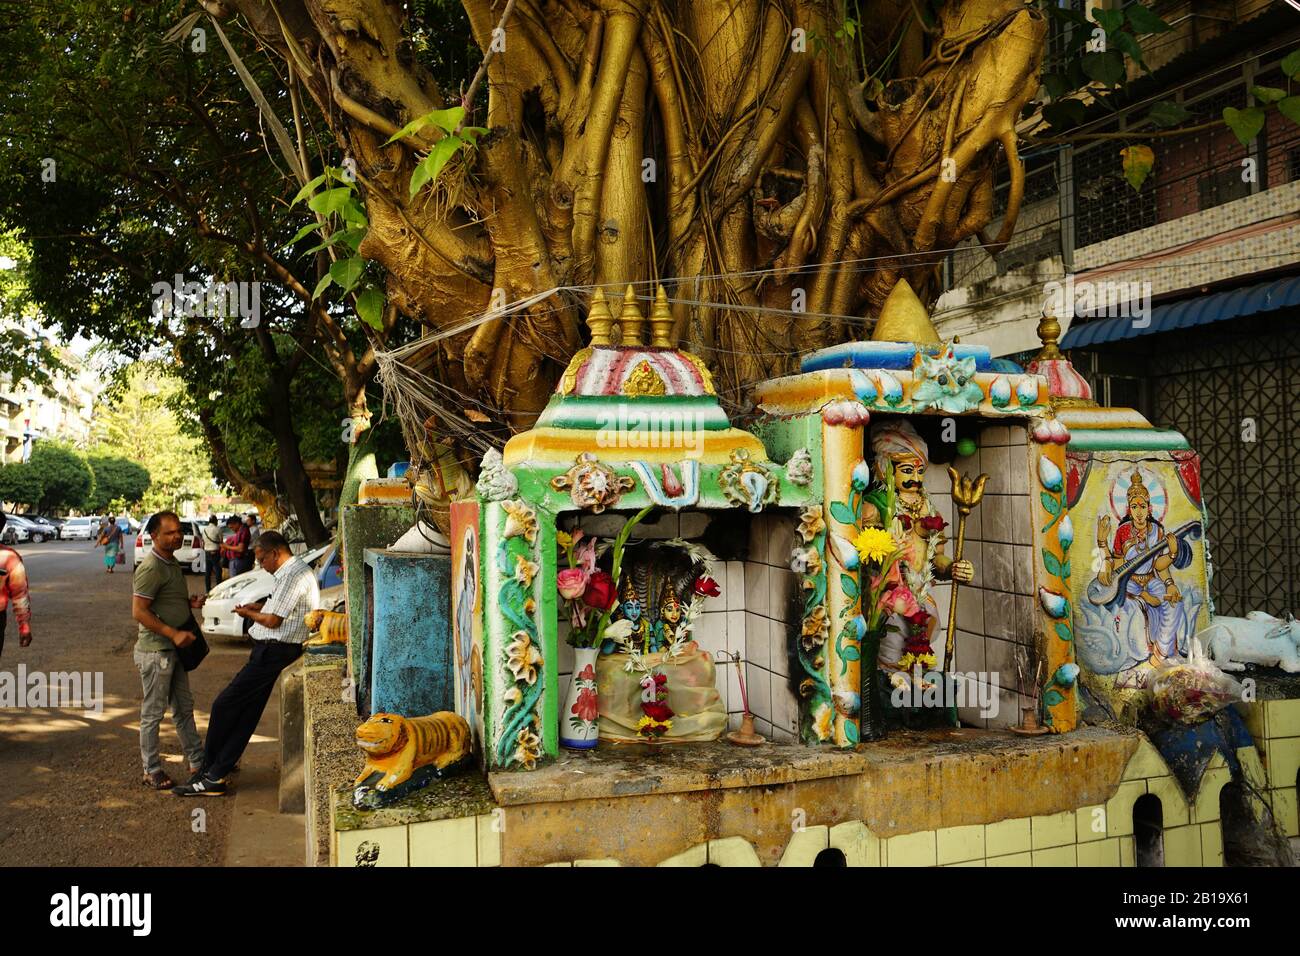 Pappel-Feige (Ficus religiosa) mit Geisterhäusern oder Nat-Schreinen, Yangon, Myanmar Stock Photo